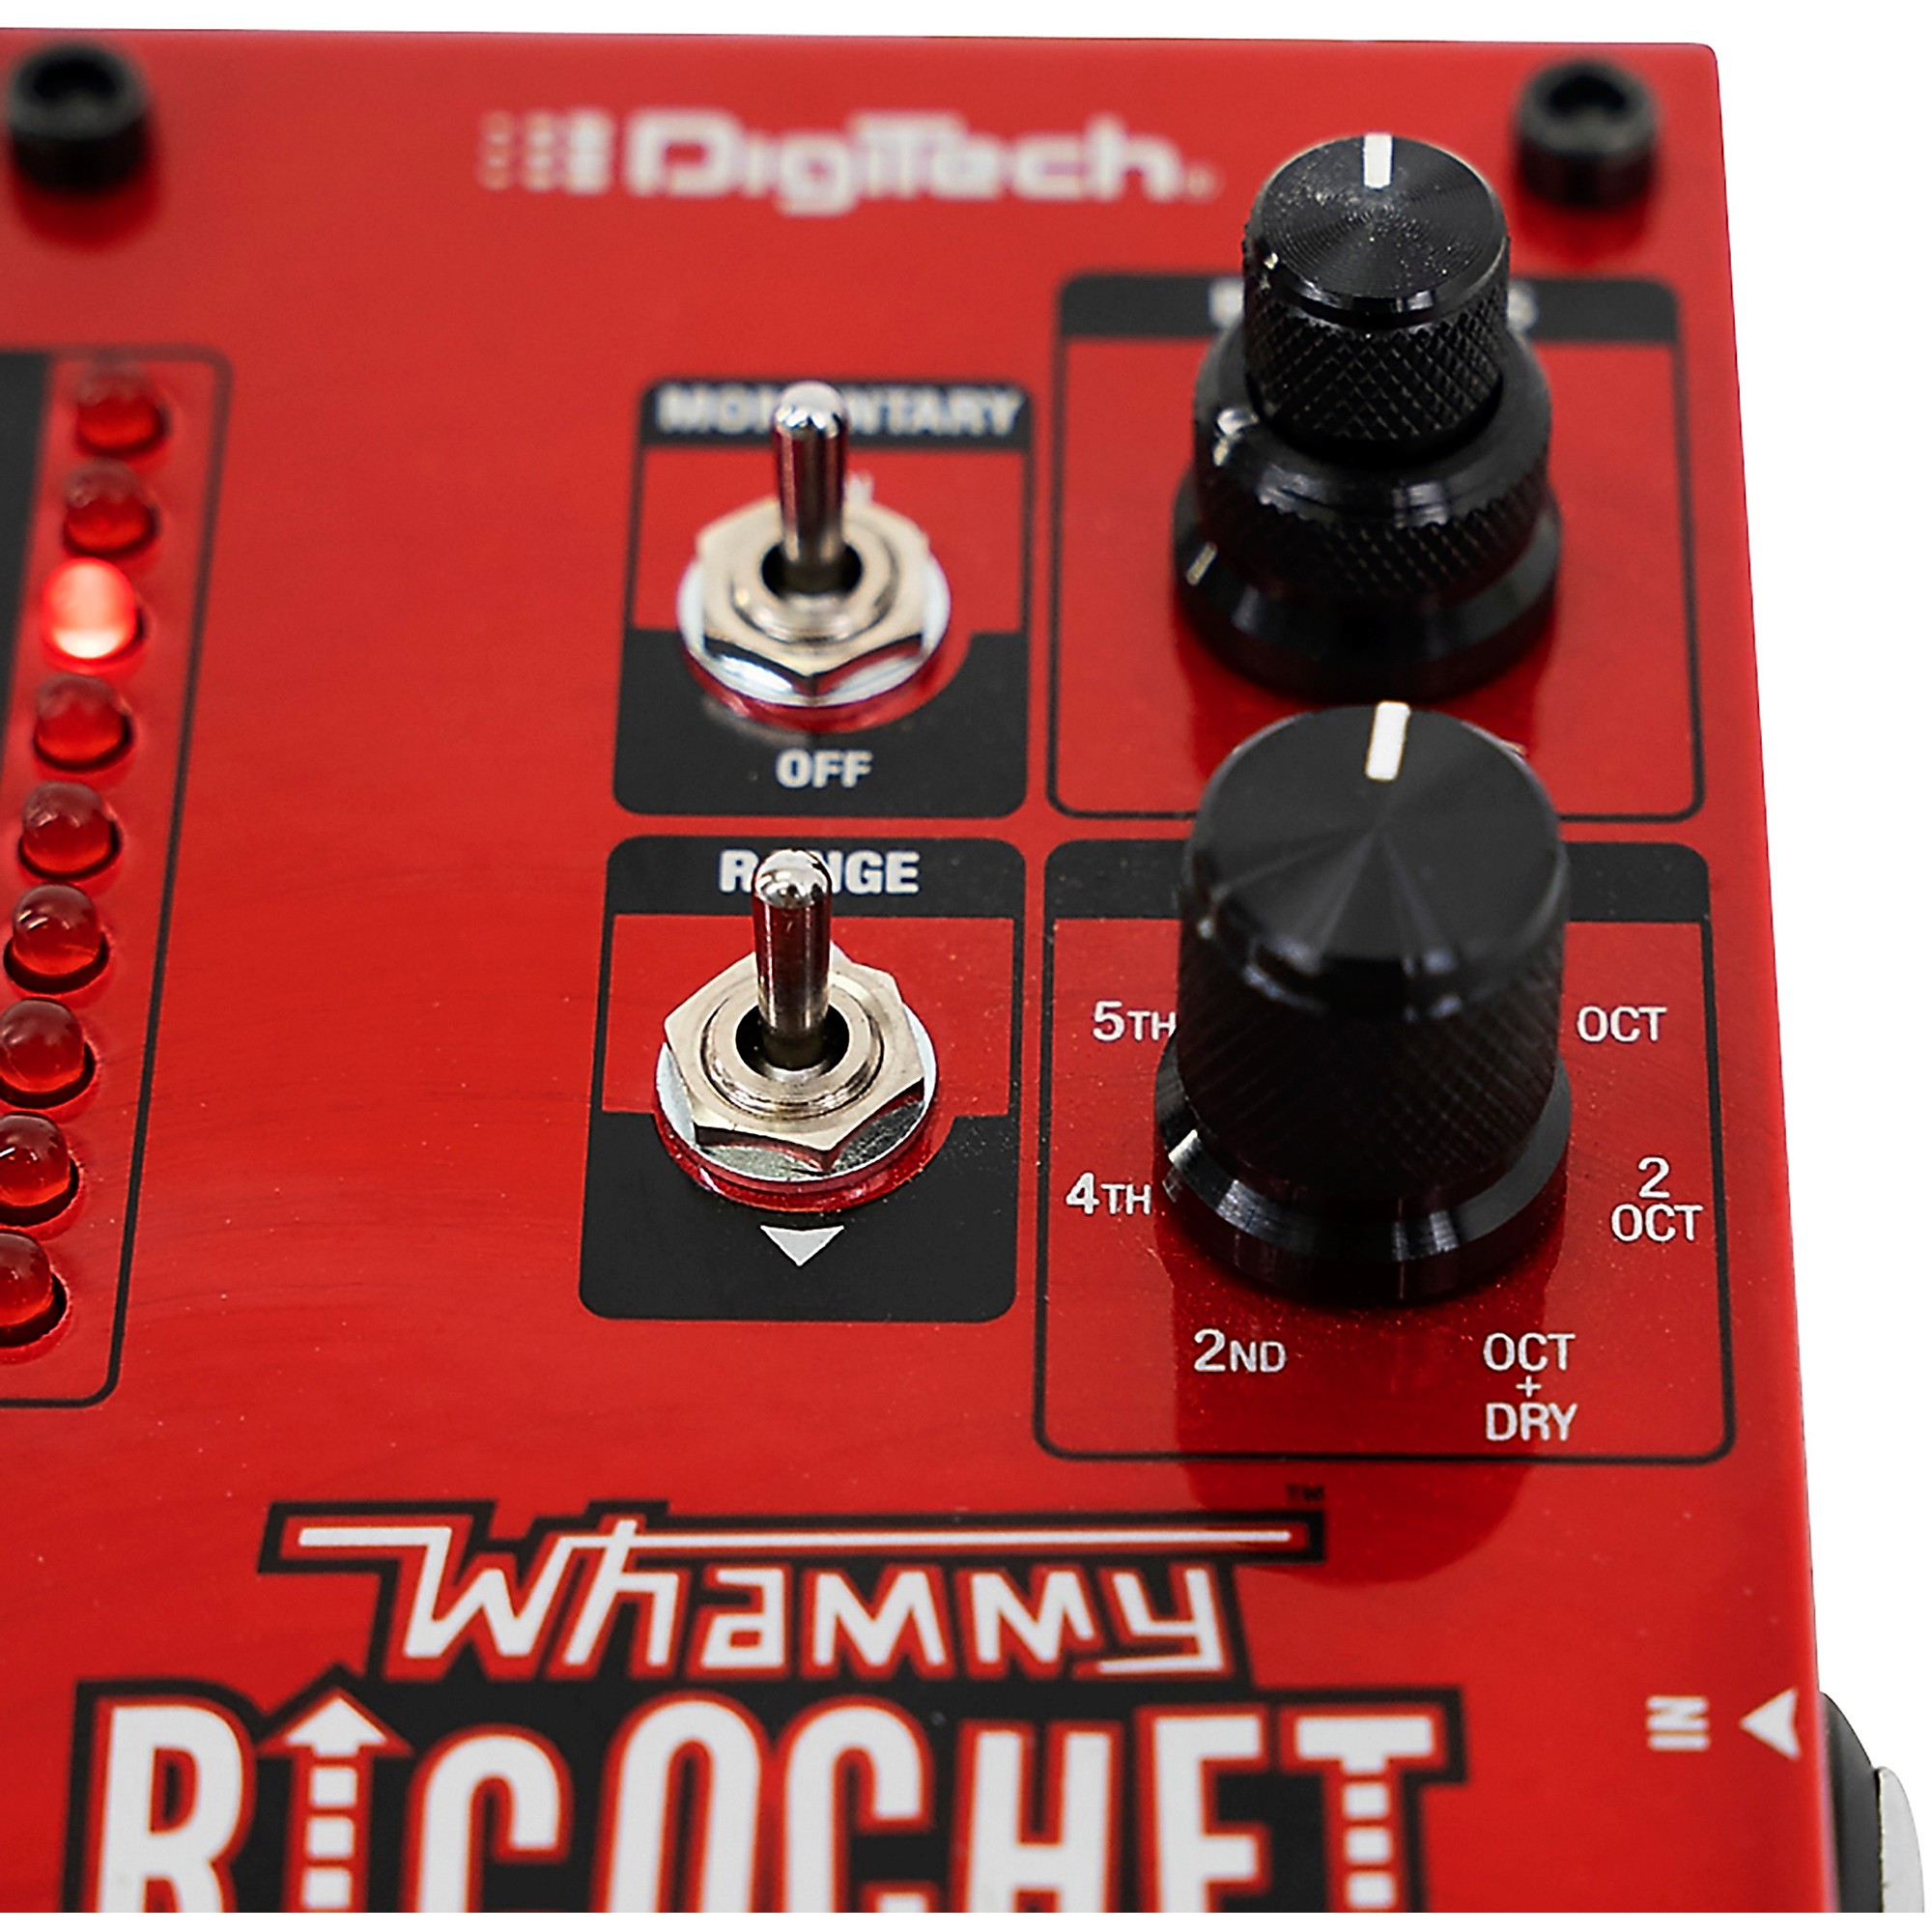 DigiTech Whammy Ricochet Guitar Effects Pedal | Guitar Center